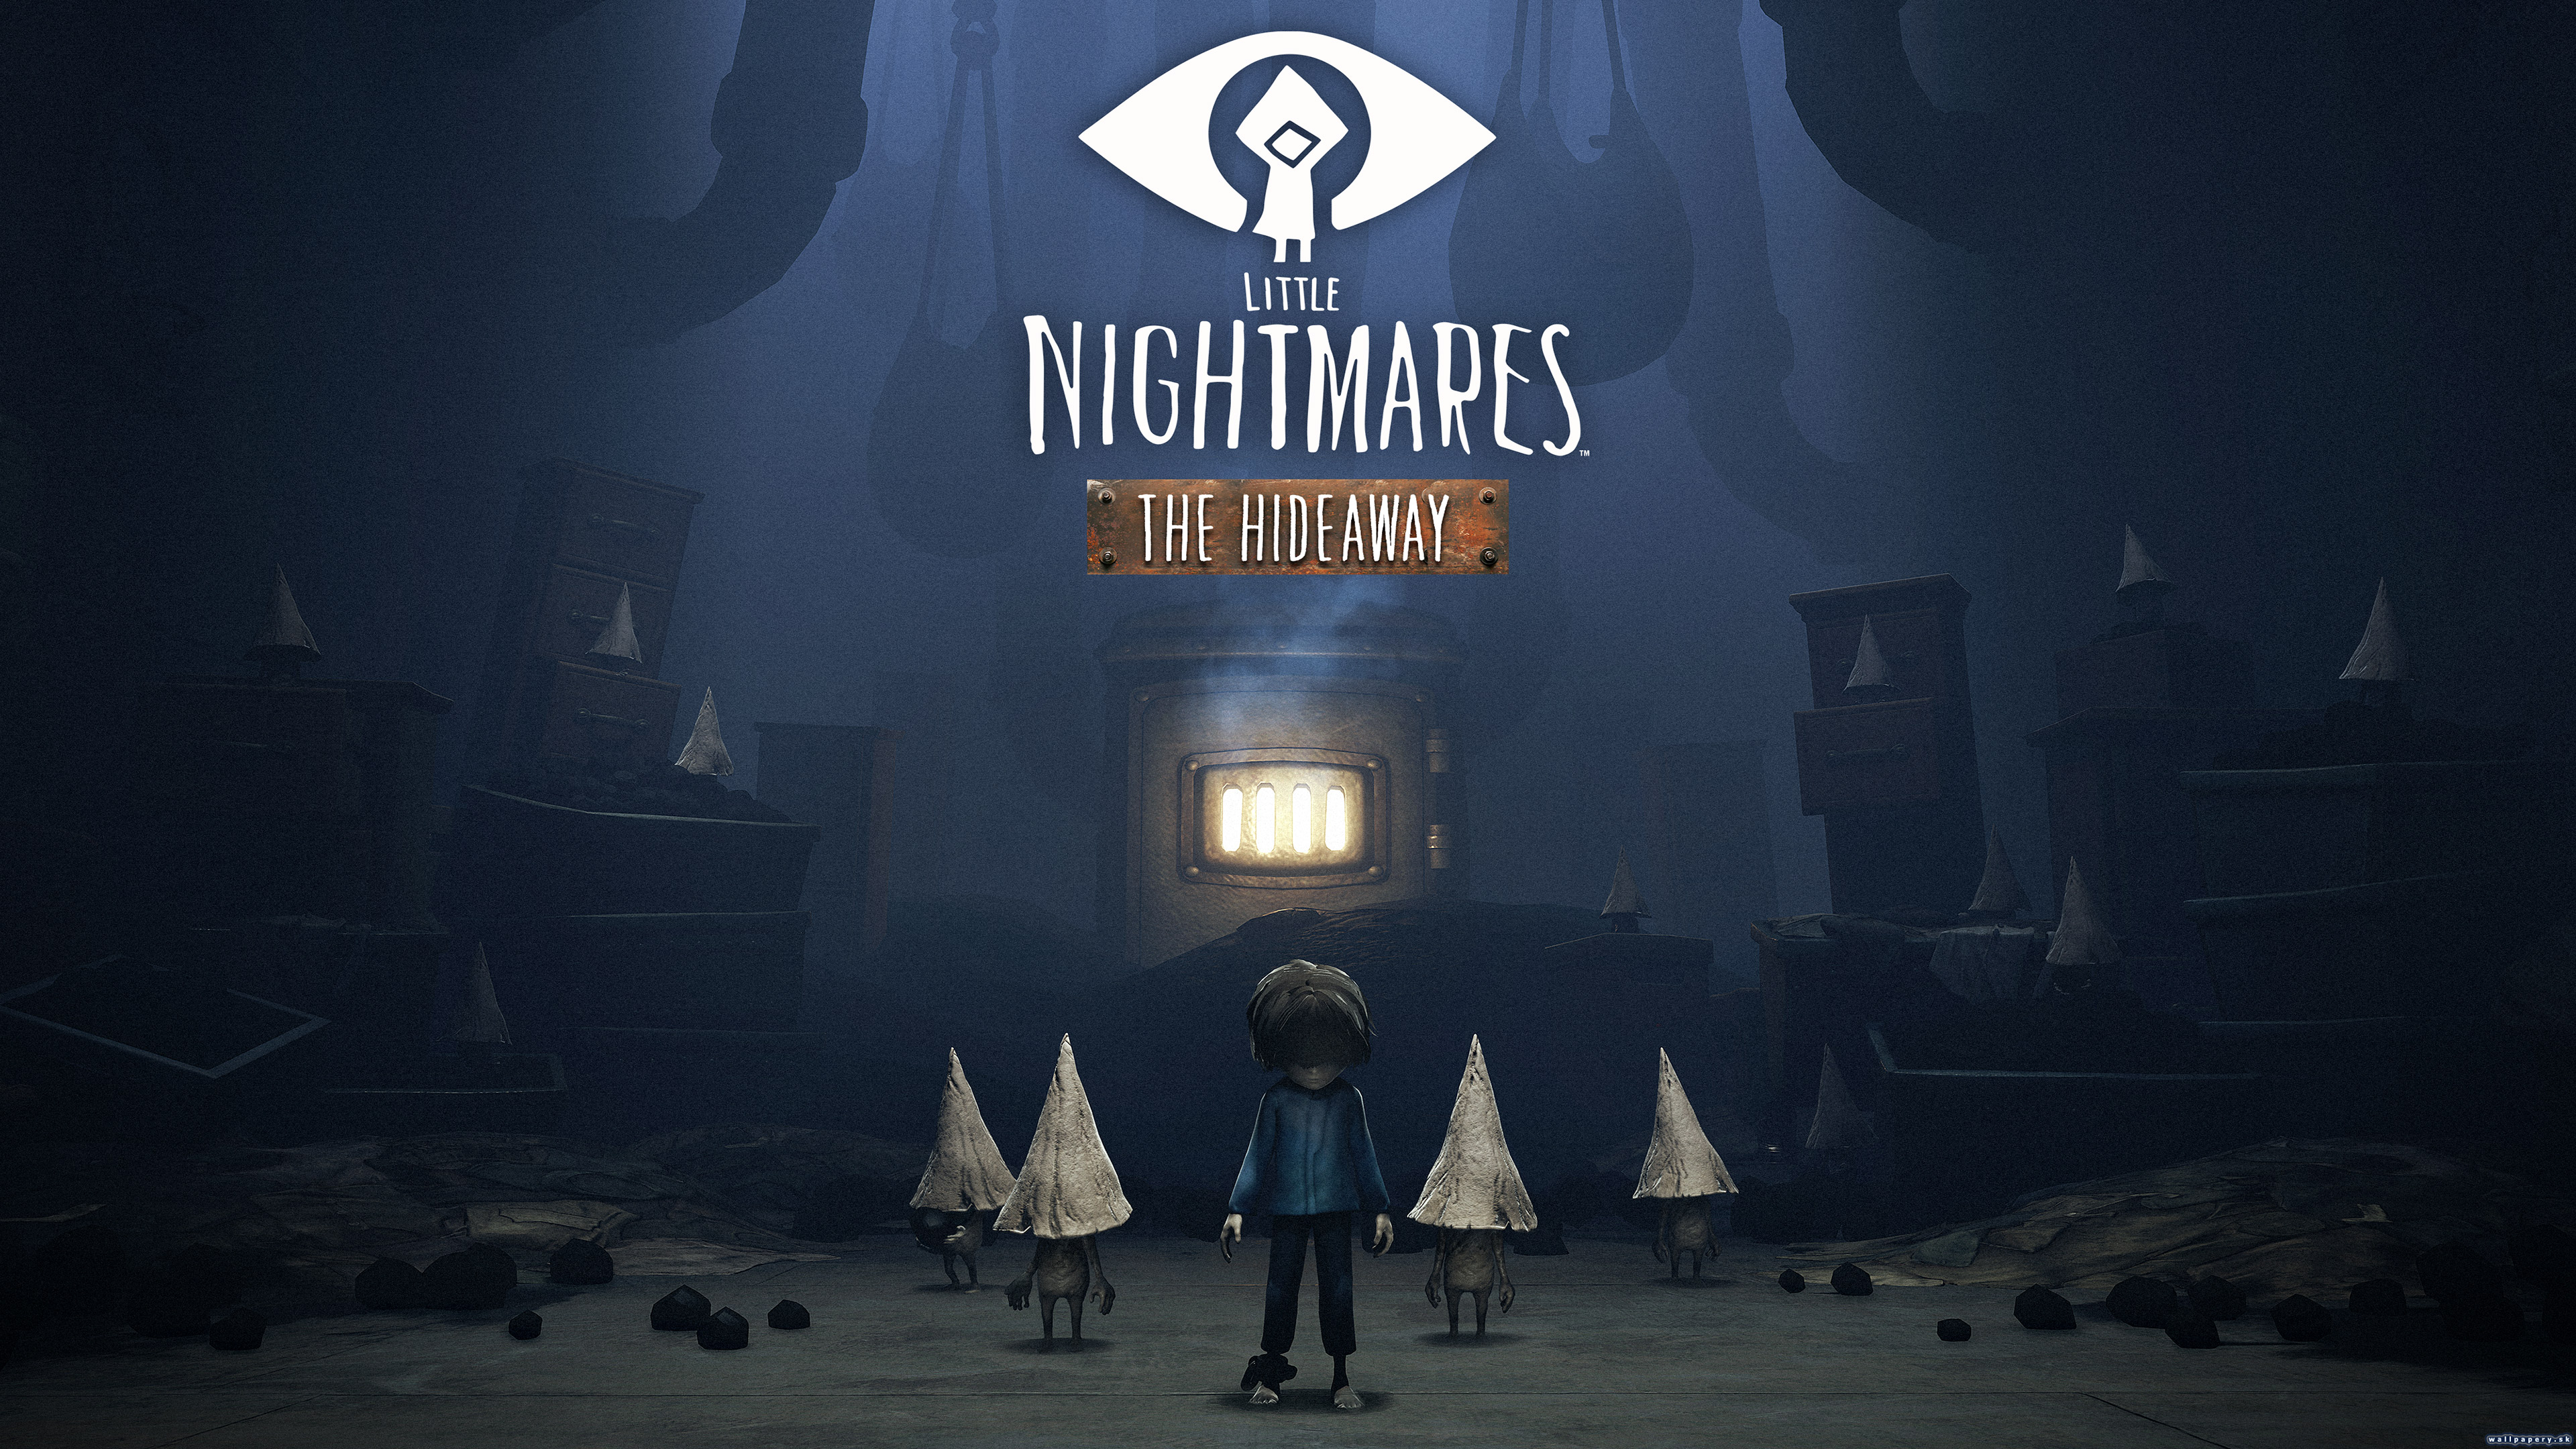 Little Nightmares: The Hideaway - wallpaper 1